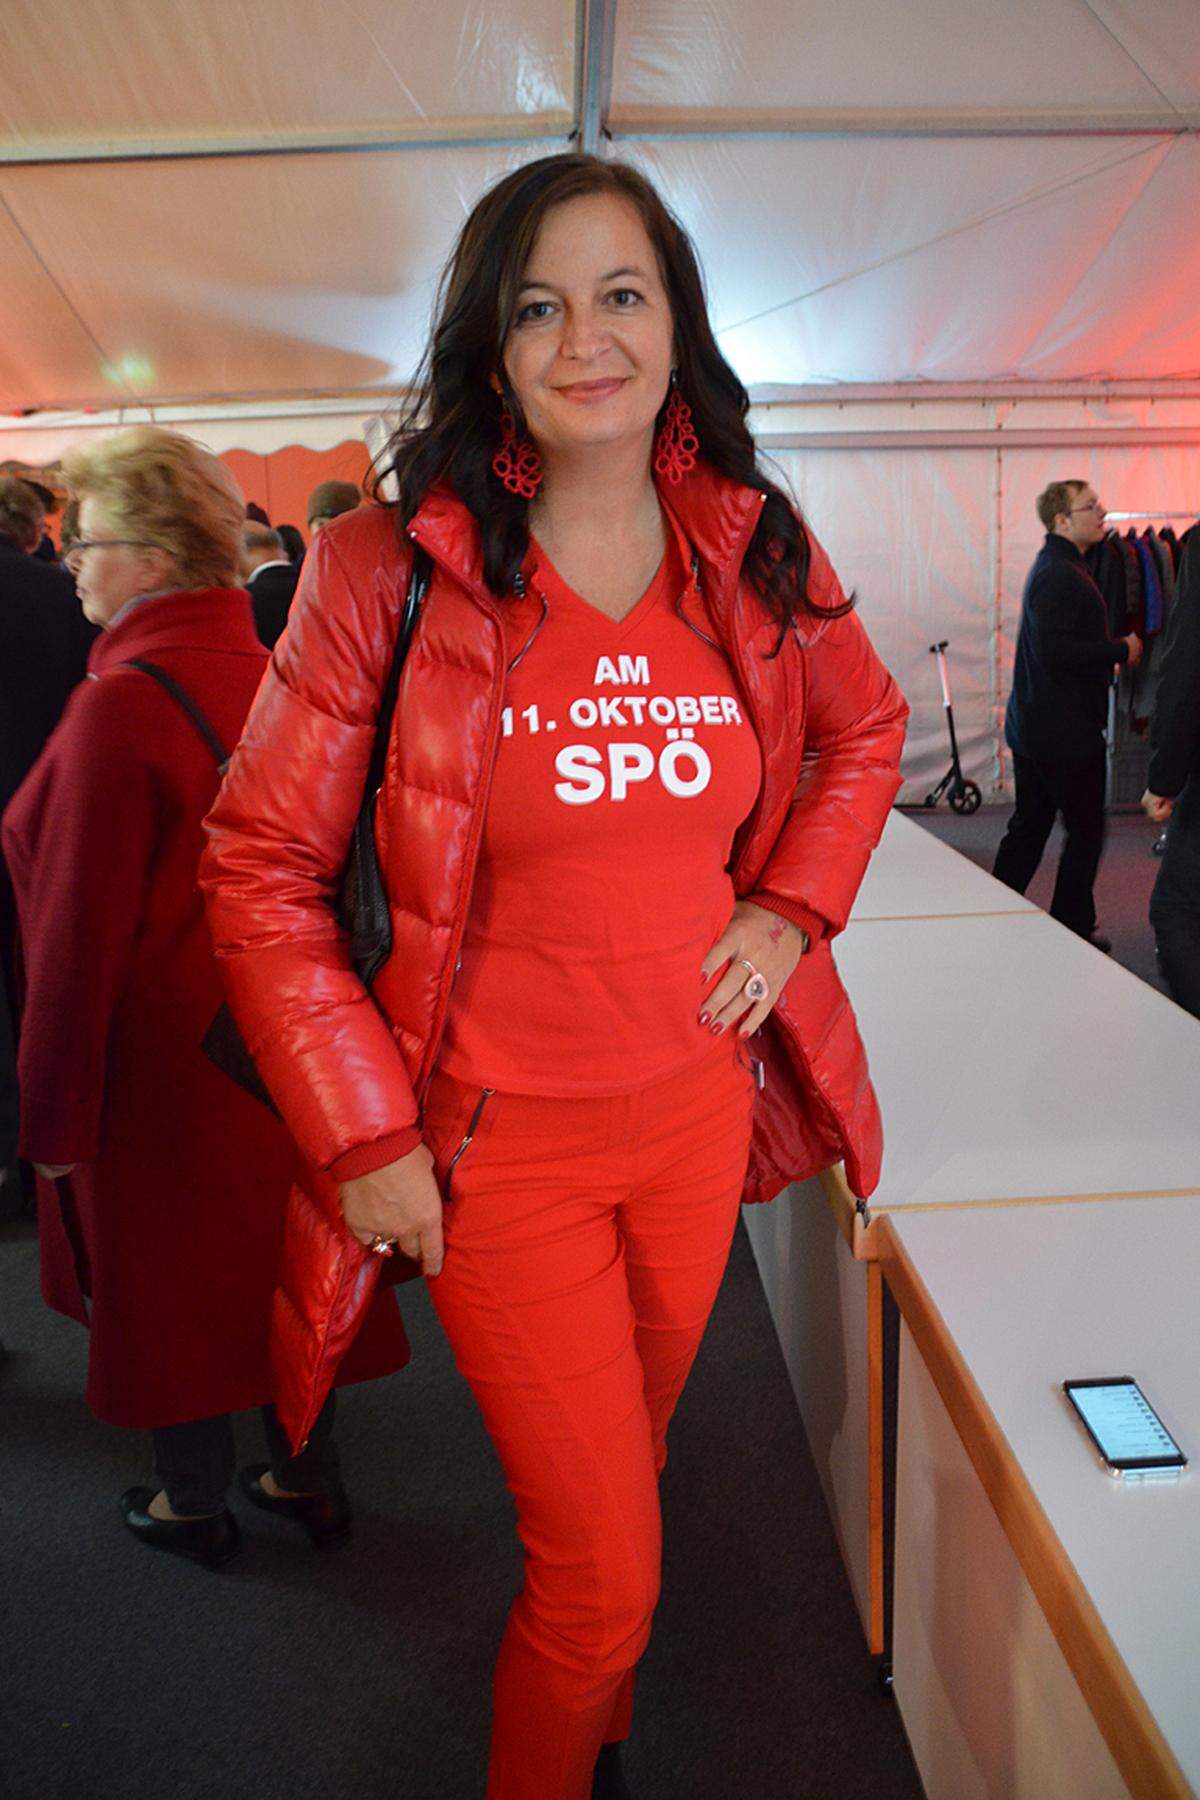 Umweltstadträtin Ulli Sima trägt ihre politischen Ansichten auf der Haut: Selbst die Winterjacke ist SPÖ-Rot. Sie freut sich über den "unglaublich deutlichen" Abstand zwischen SPÖ und FPÖ.